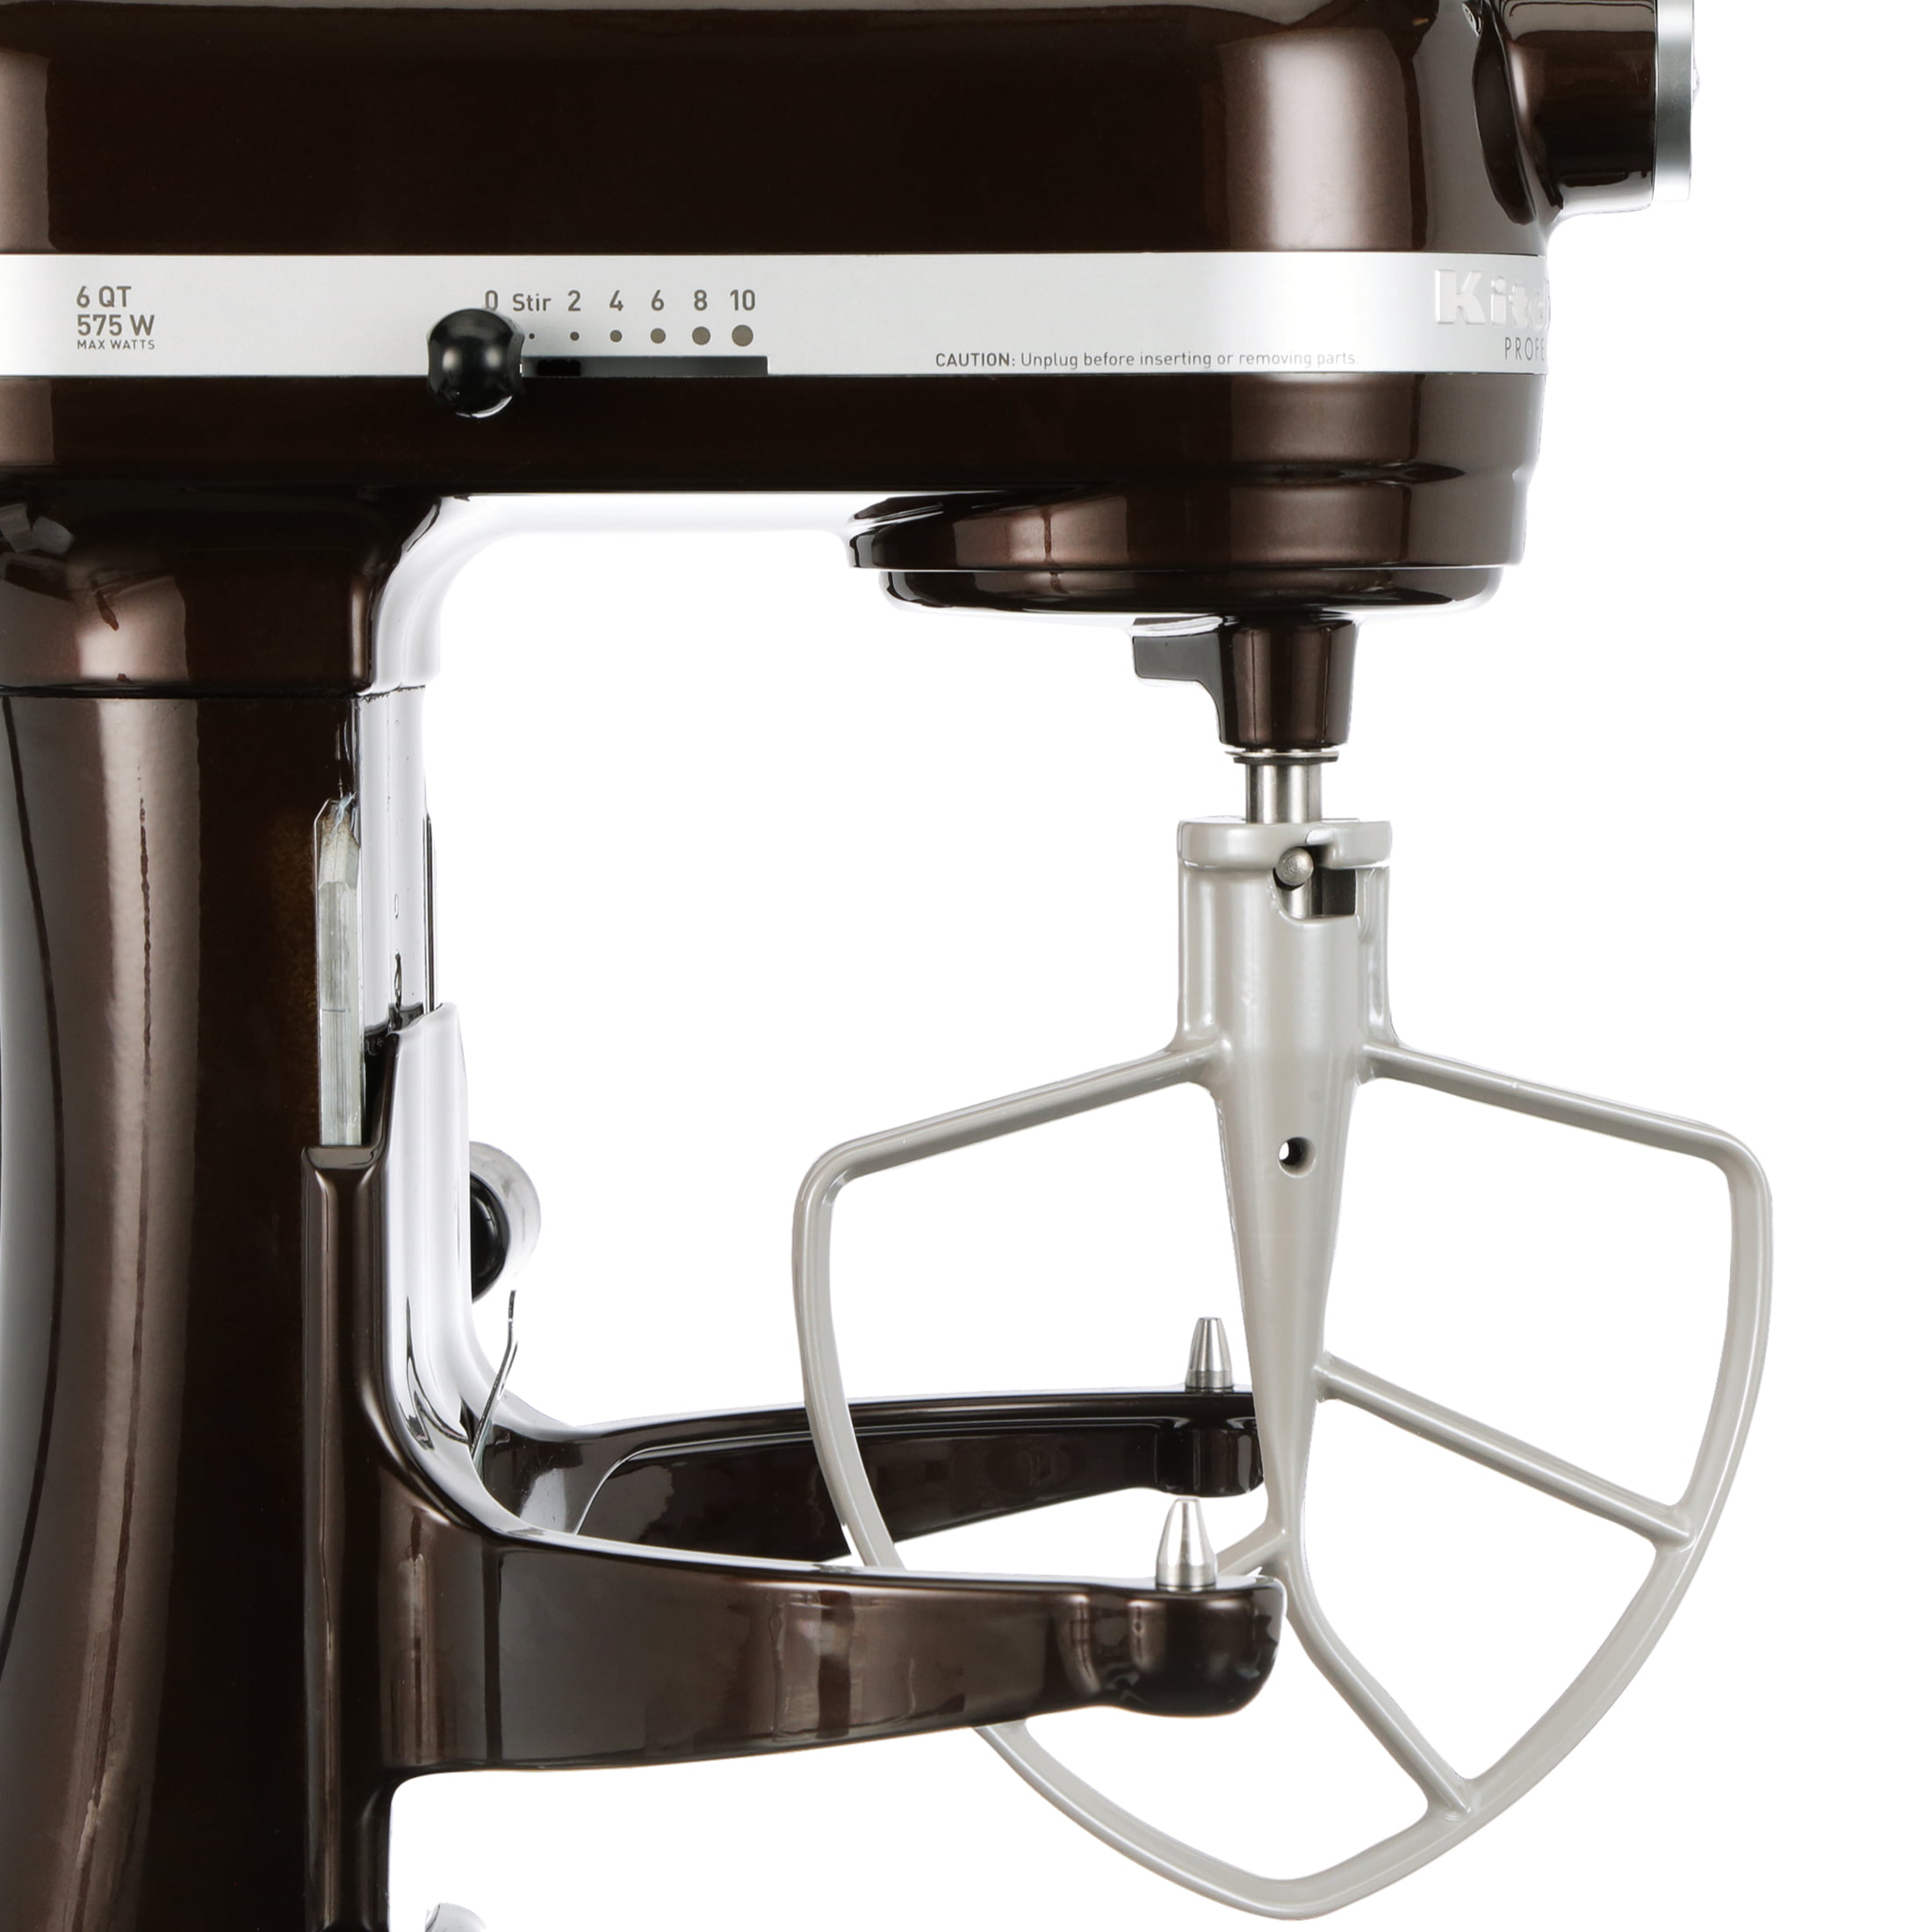 KitchenAid Pro 600 Stand Mixer with Glass Bowl #KF26M22